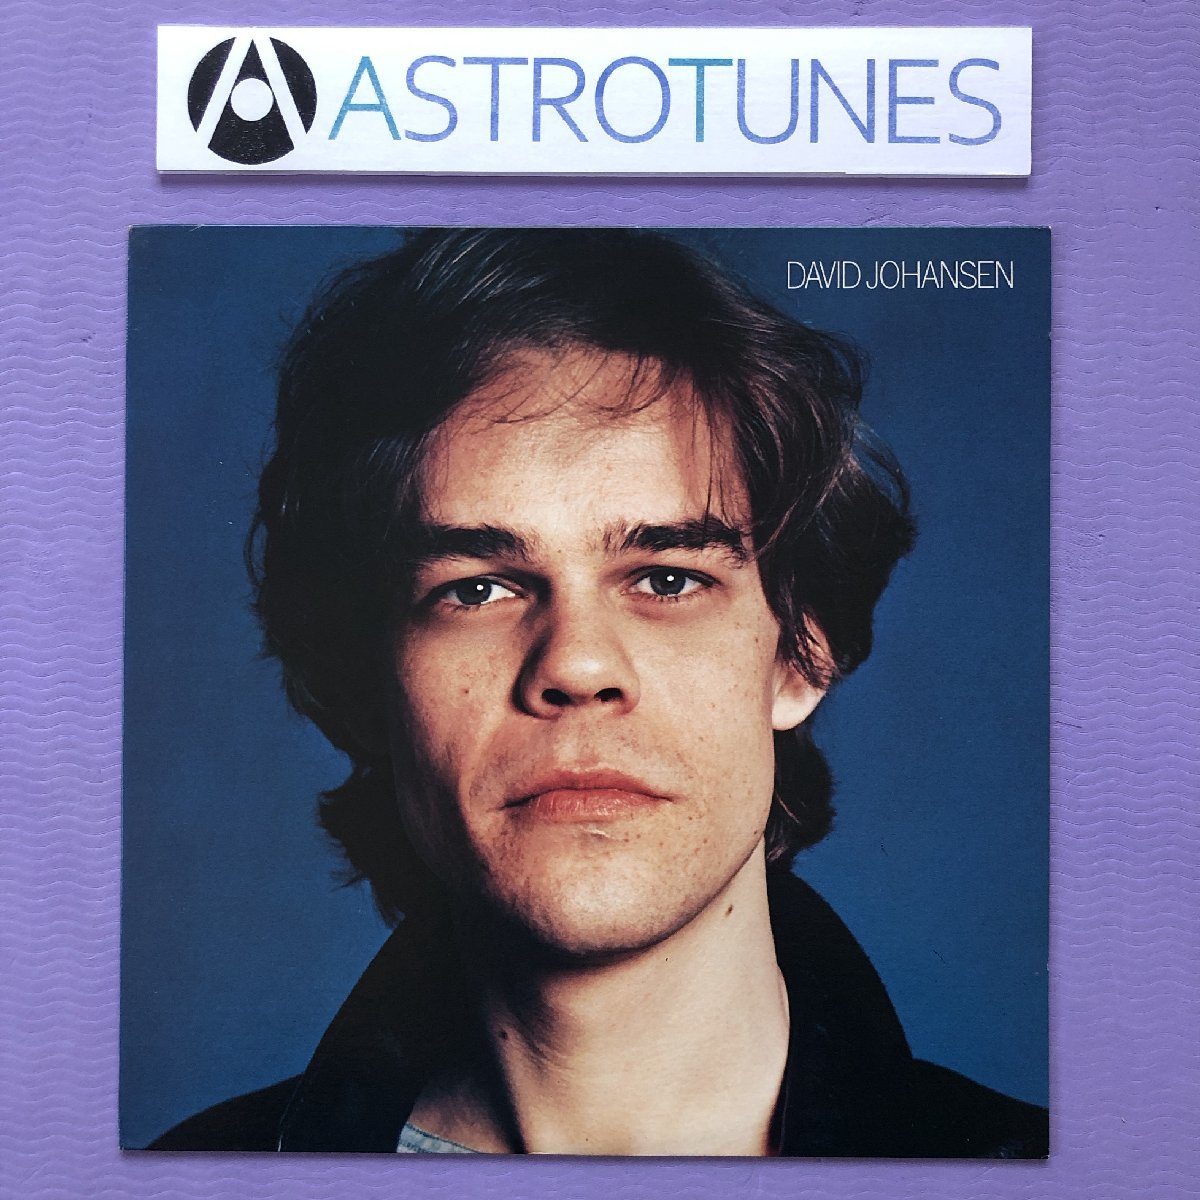 傷なし美盤 レア盤 デヴィッド・ヨハンセン David Johansen 1978年 LPレコード ニュー・ヨーク・ロックン・ローラー 国内盤 New York Dolls_画像1